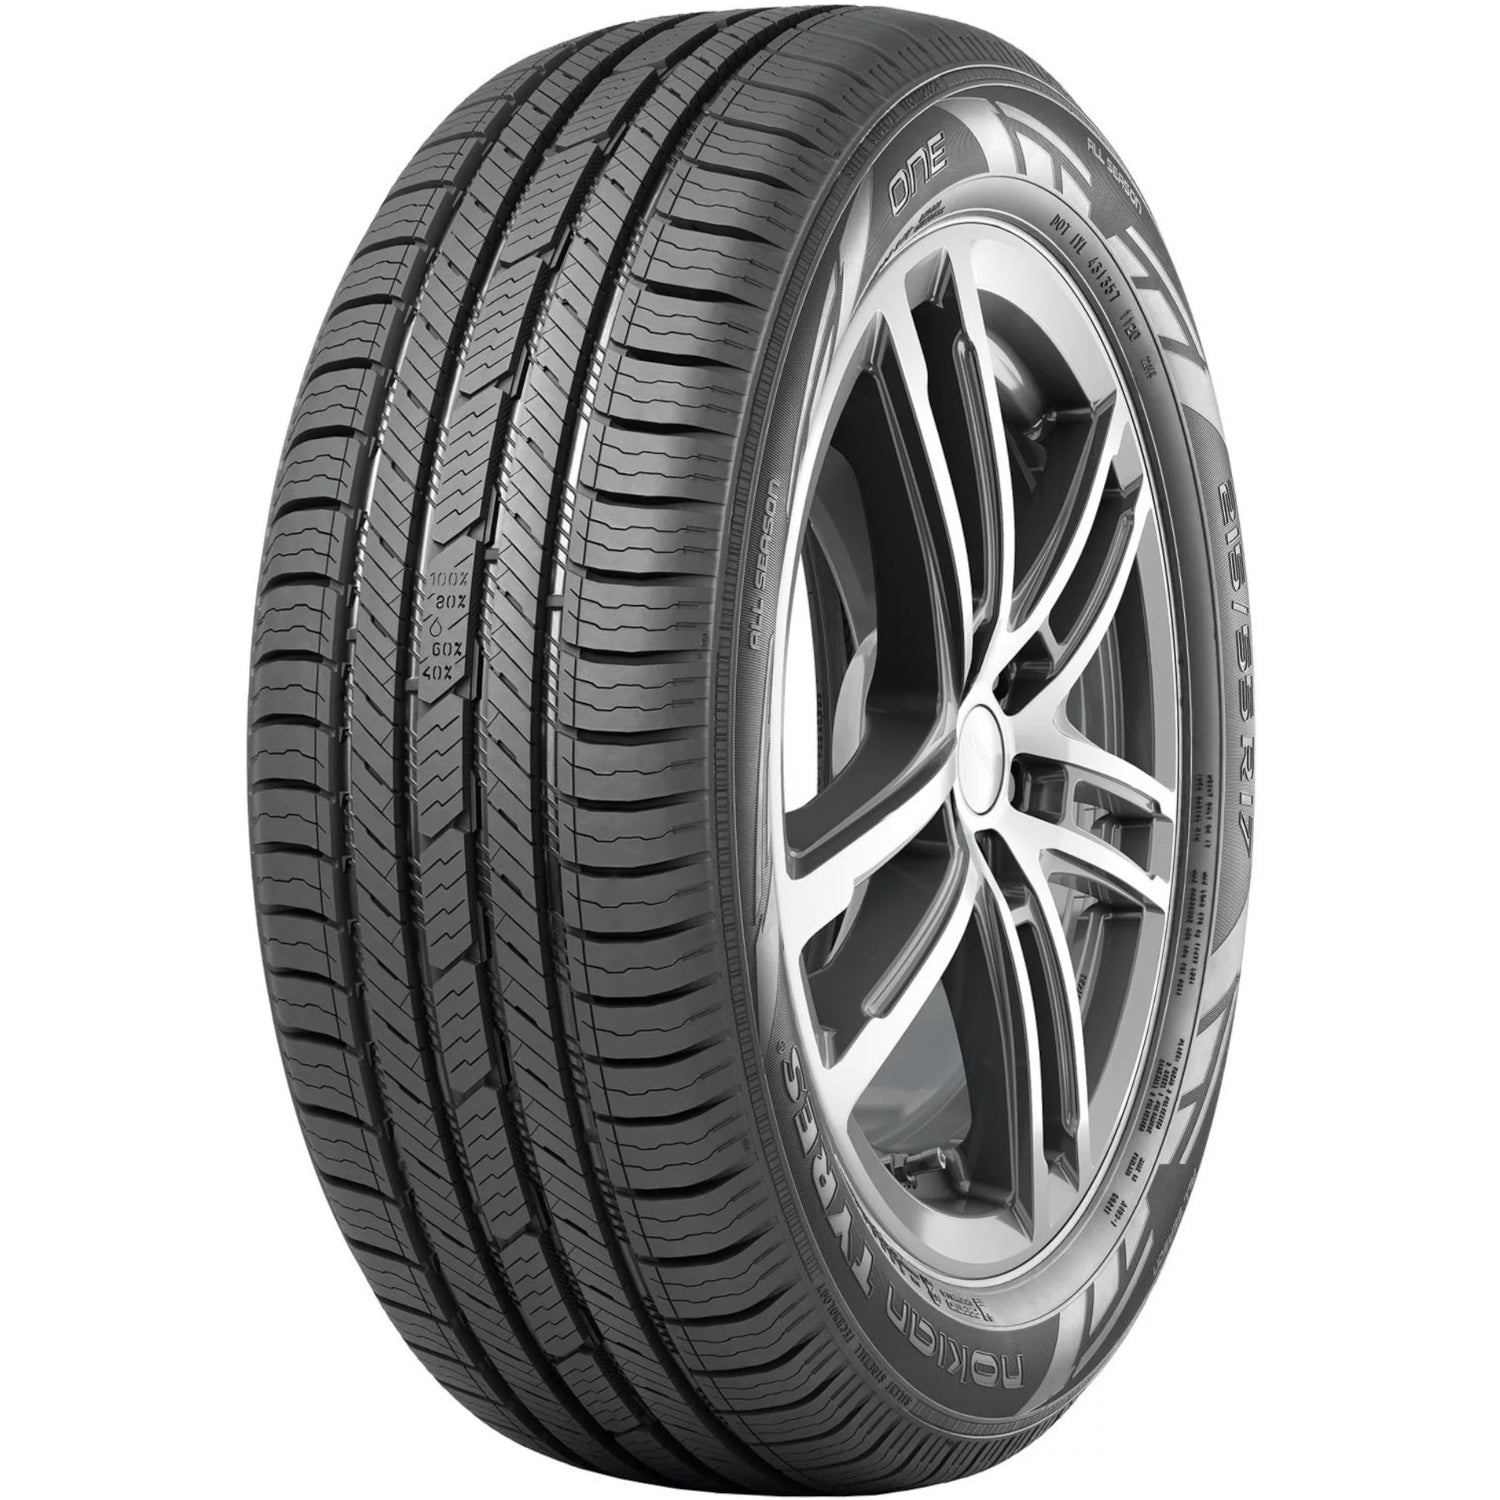 NOKIAN ONE 215/50R17XL (25.5X8.5R 17) Tires